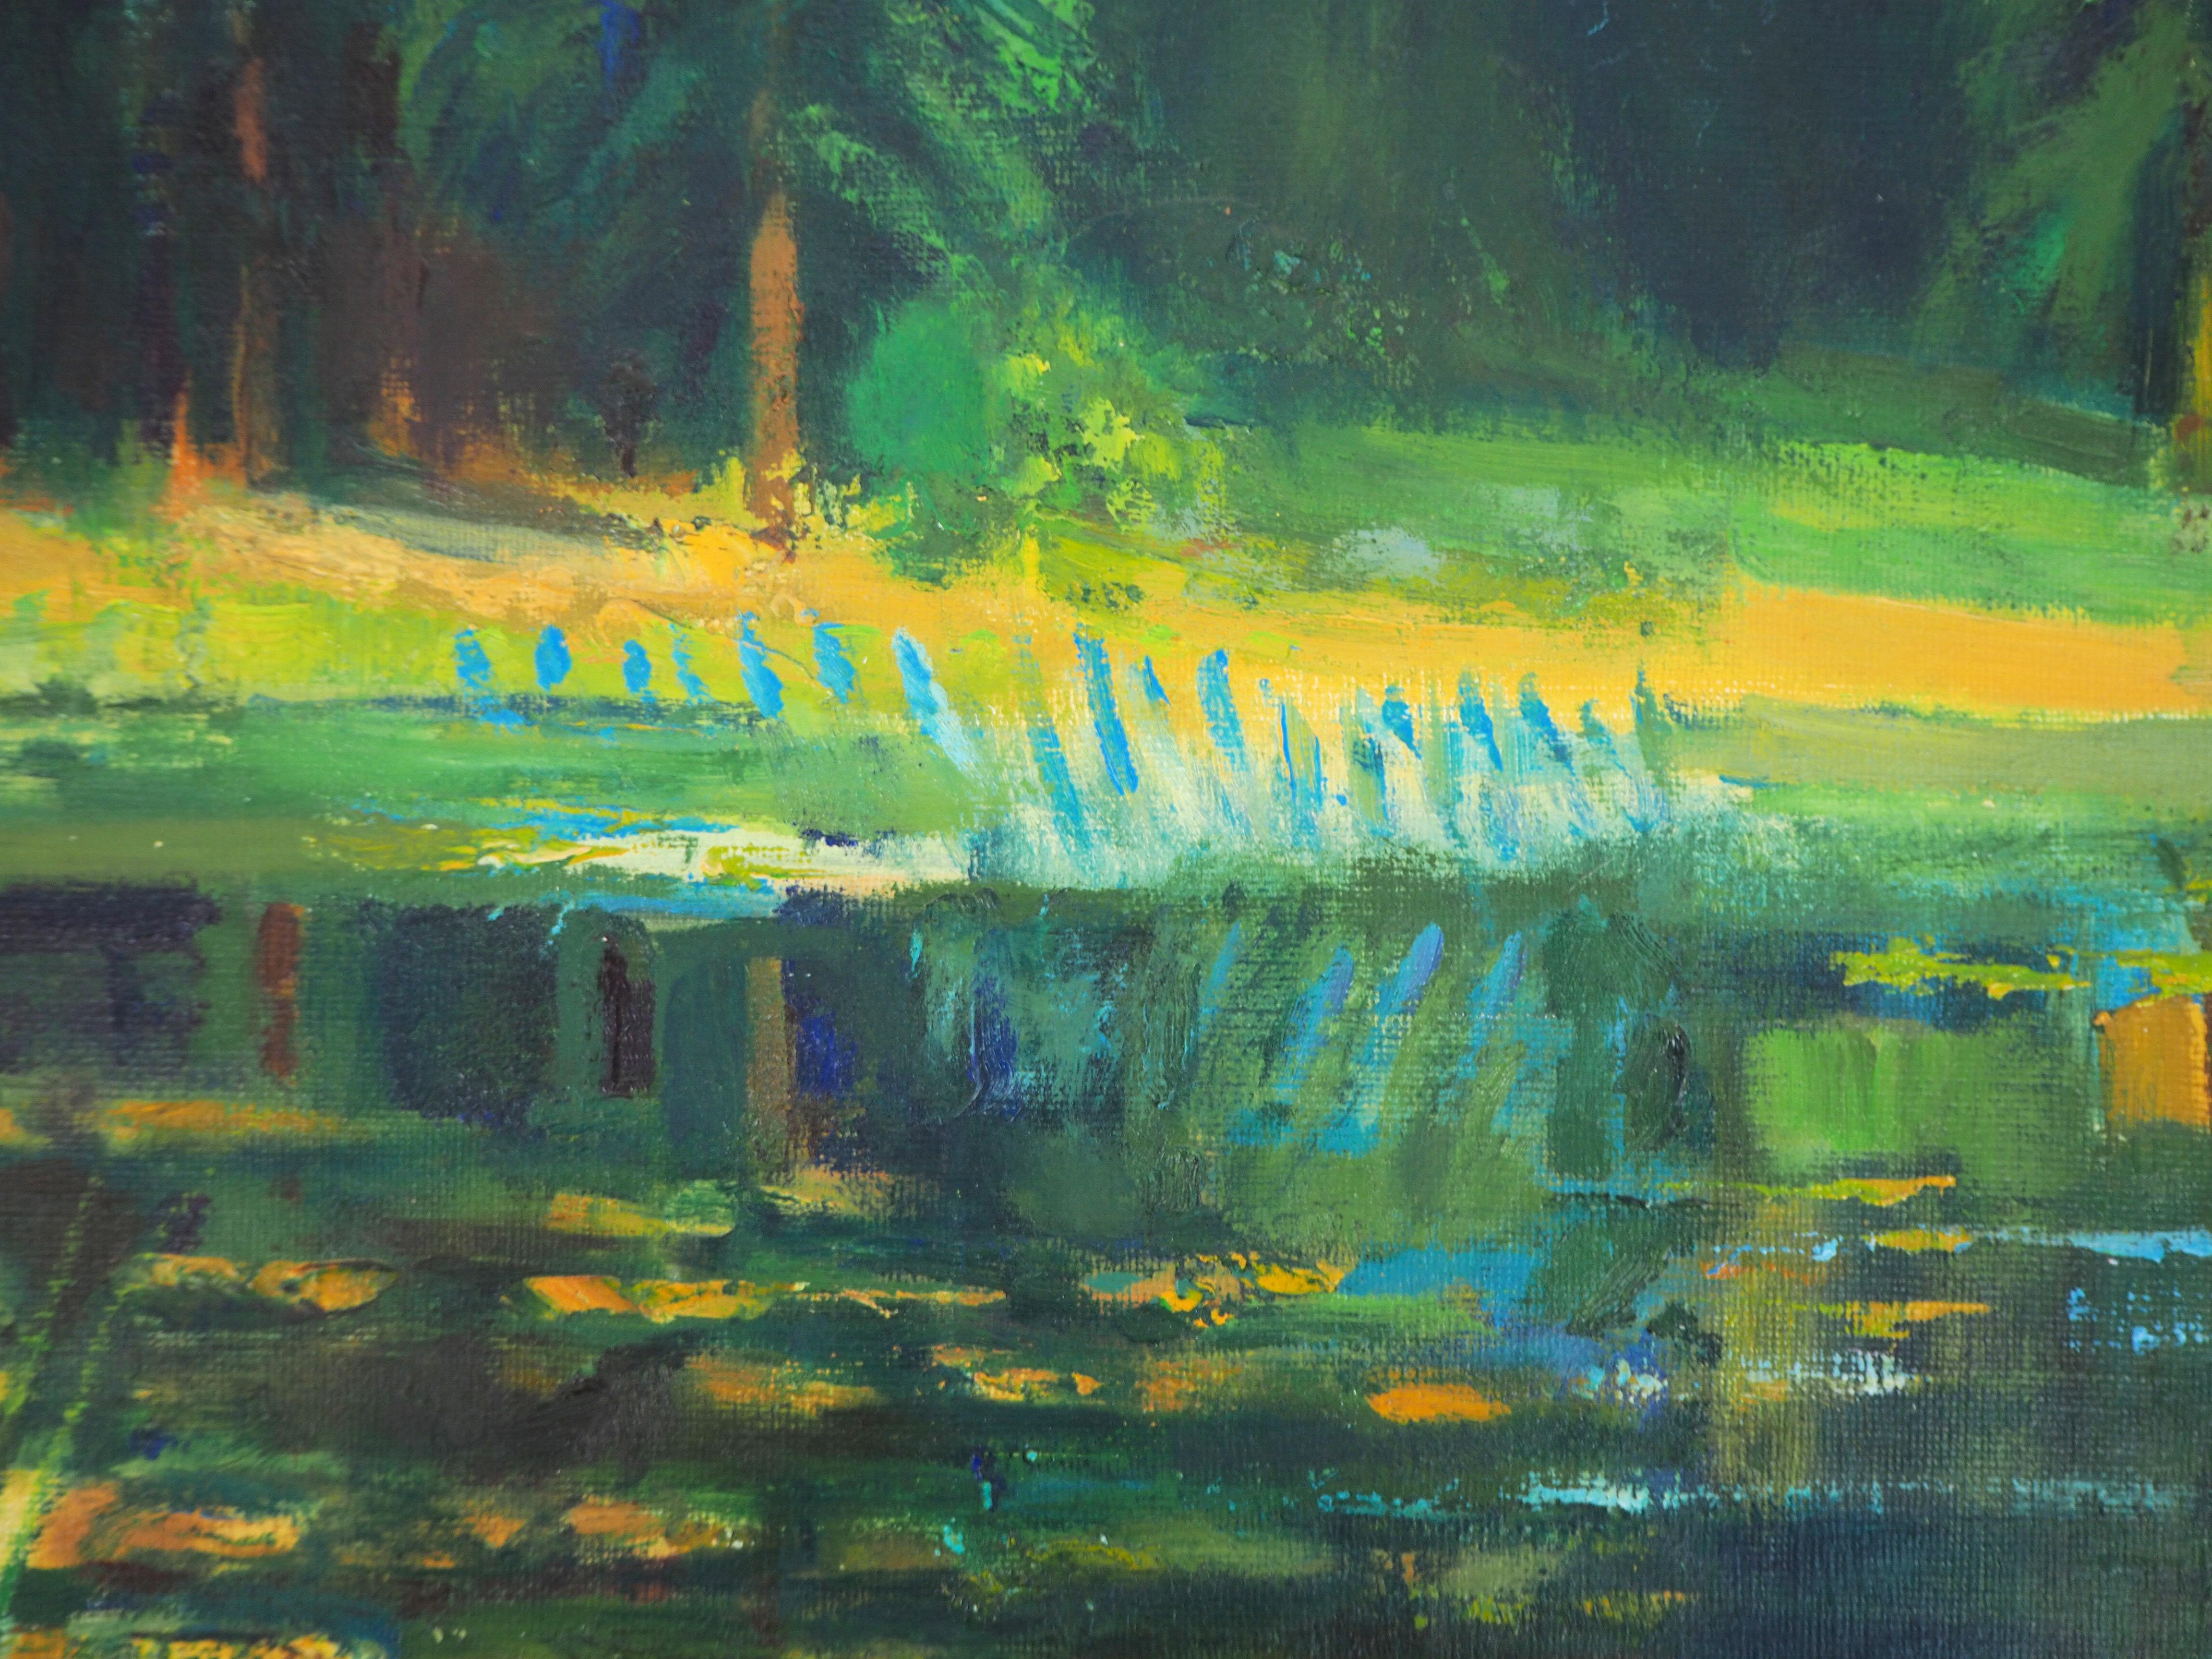 Paul Collomb
Wild Nature : Petit bateau sur l'étang

Peinture à l'huile originale sur toile
Signé en bas à gauche
Titré au dos
Sur toile 55 x 46 cm (c. 22 x 18 in)

Excellent état